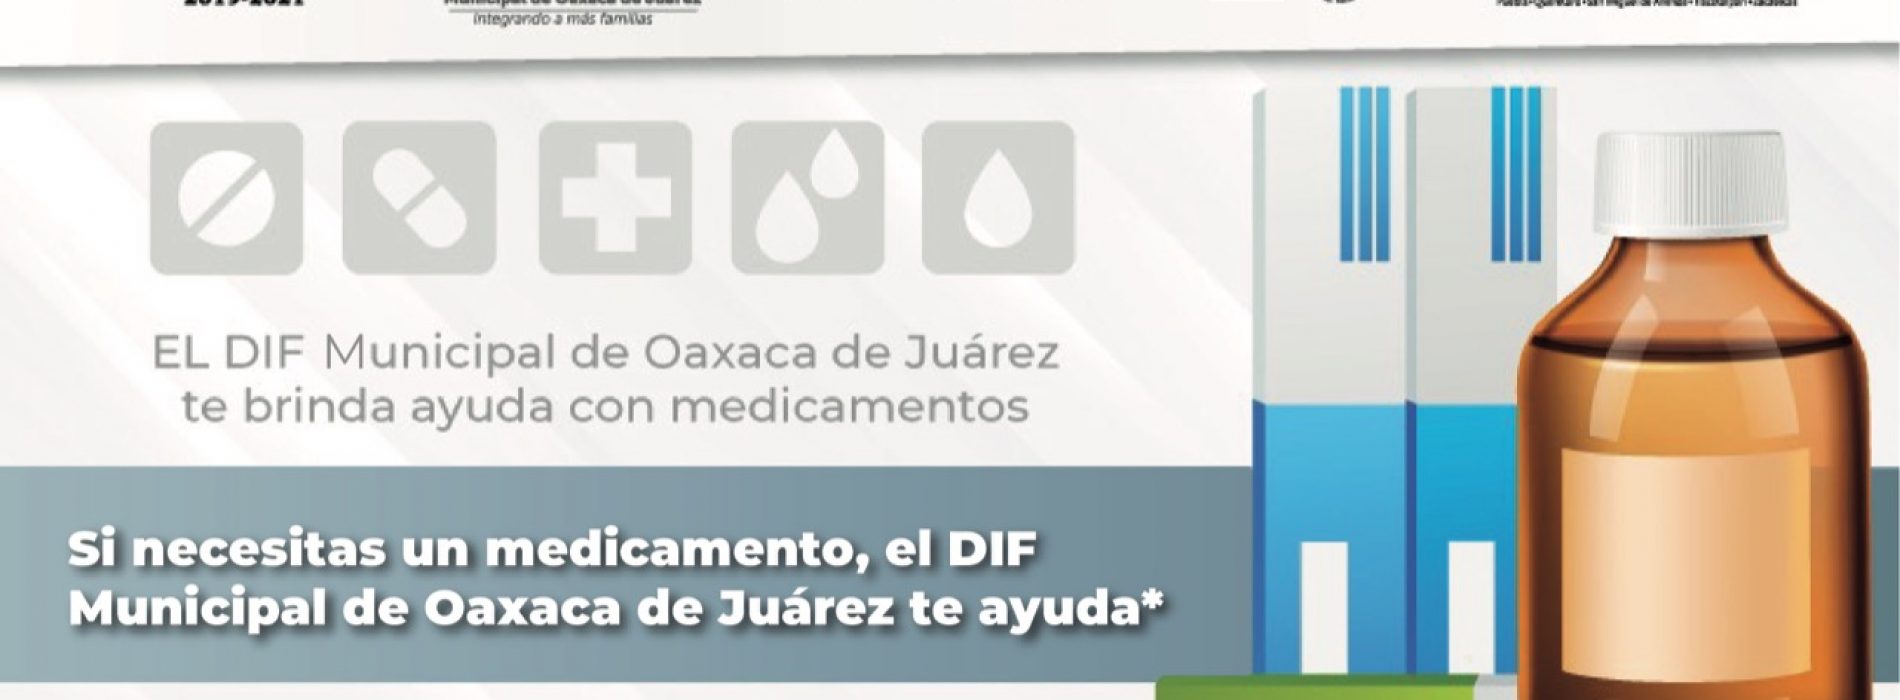 DIF Municipal de Oaxaca de Juárez continúa otorgando medicamentos gratuitos solo con receta